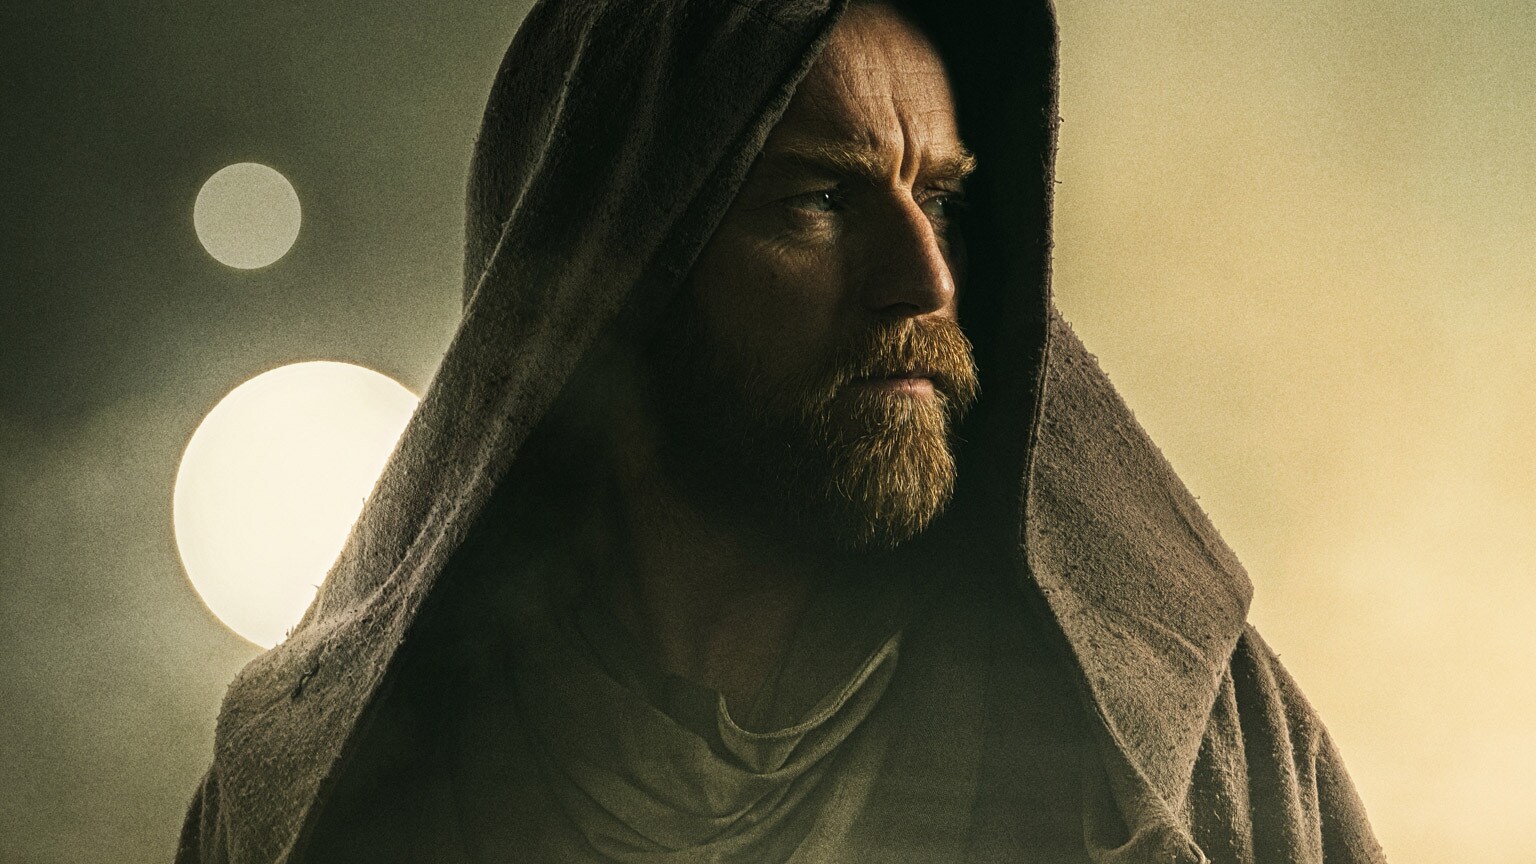 5 Highlights from the Obi-Wan Kenobi Trailer